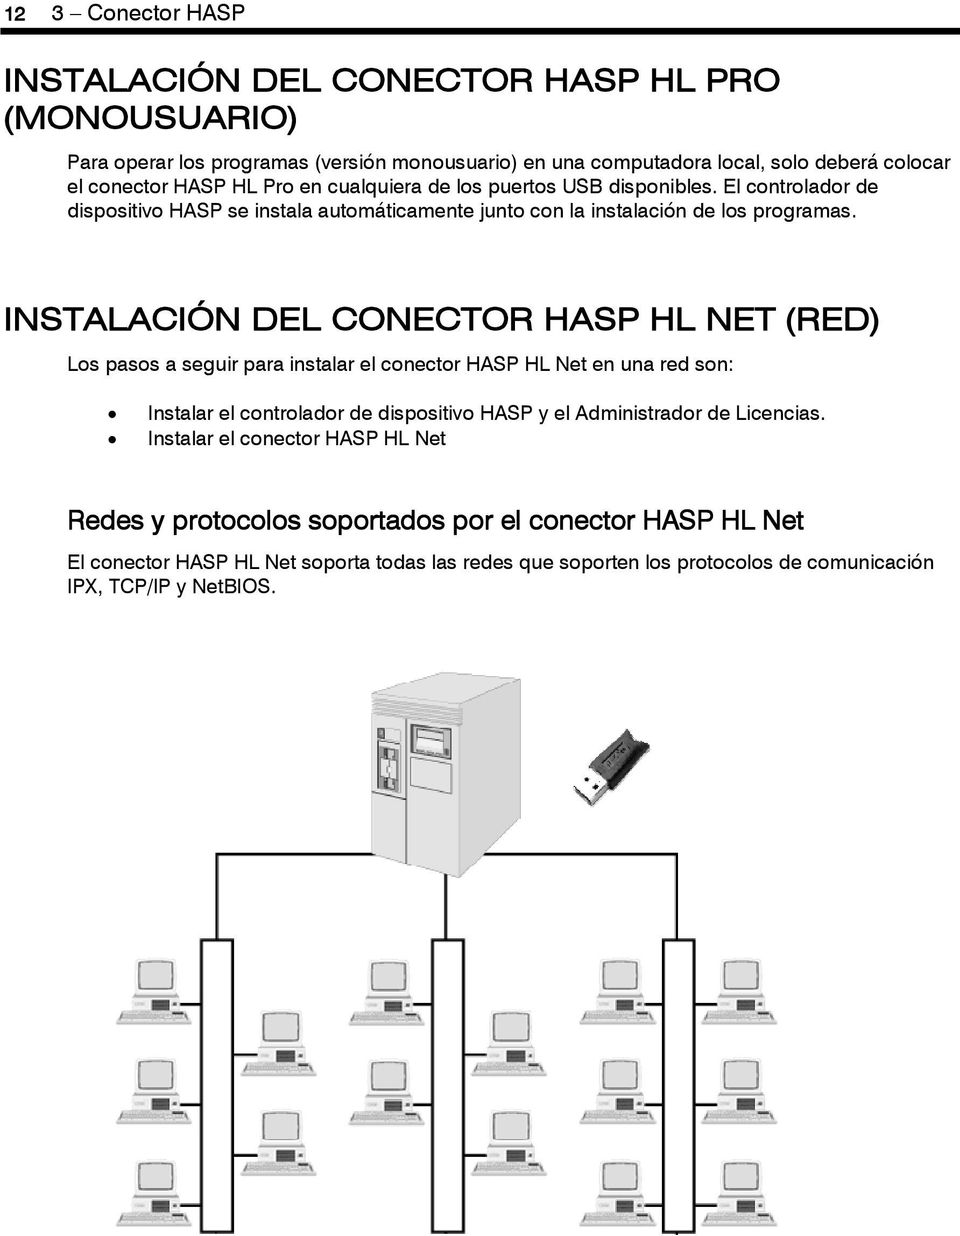 INSTALACIÓN DEL CONECTOR HASP HL NET (RED) Los pasos a seguir para instalar el conector HASP HL Net en una red son: Instalar el controlador de dispositivo HASP y el Administrador de